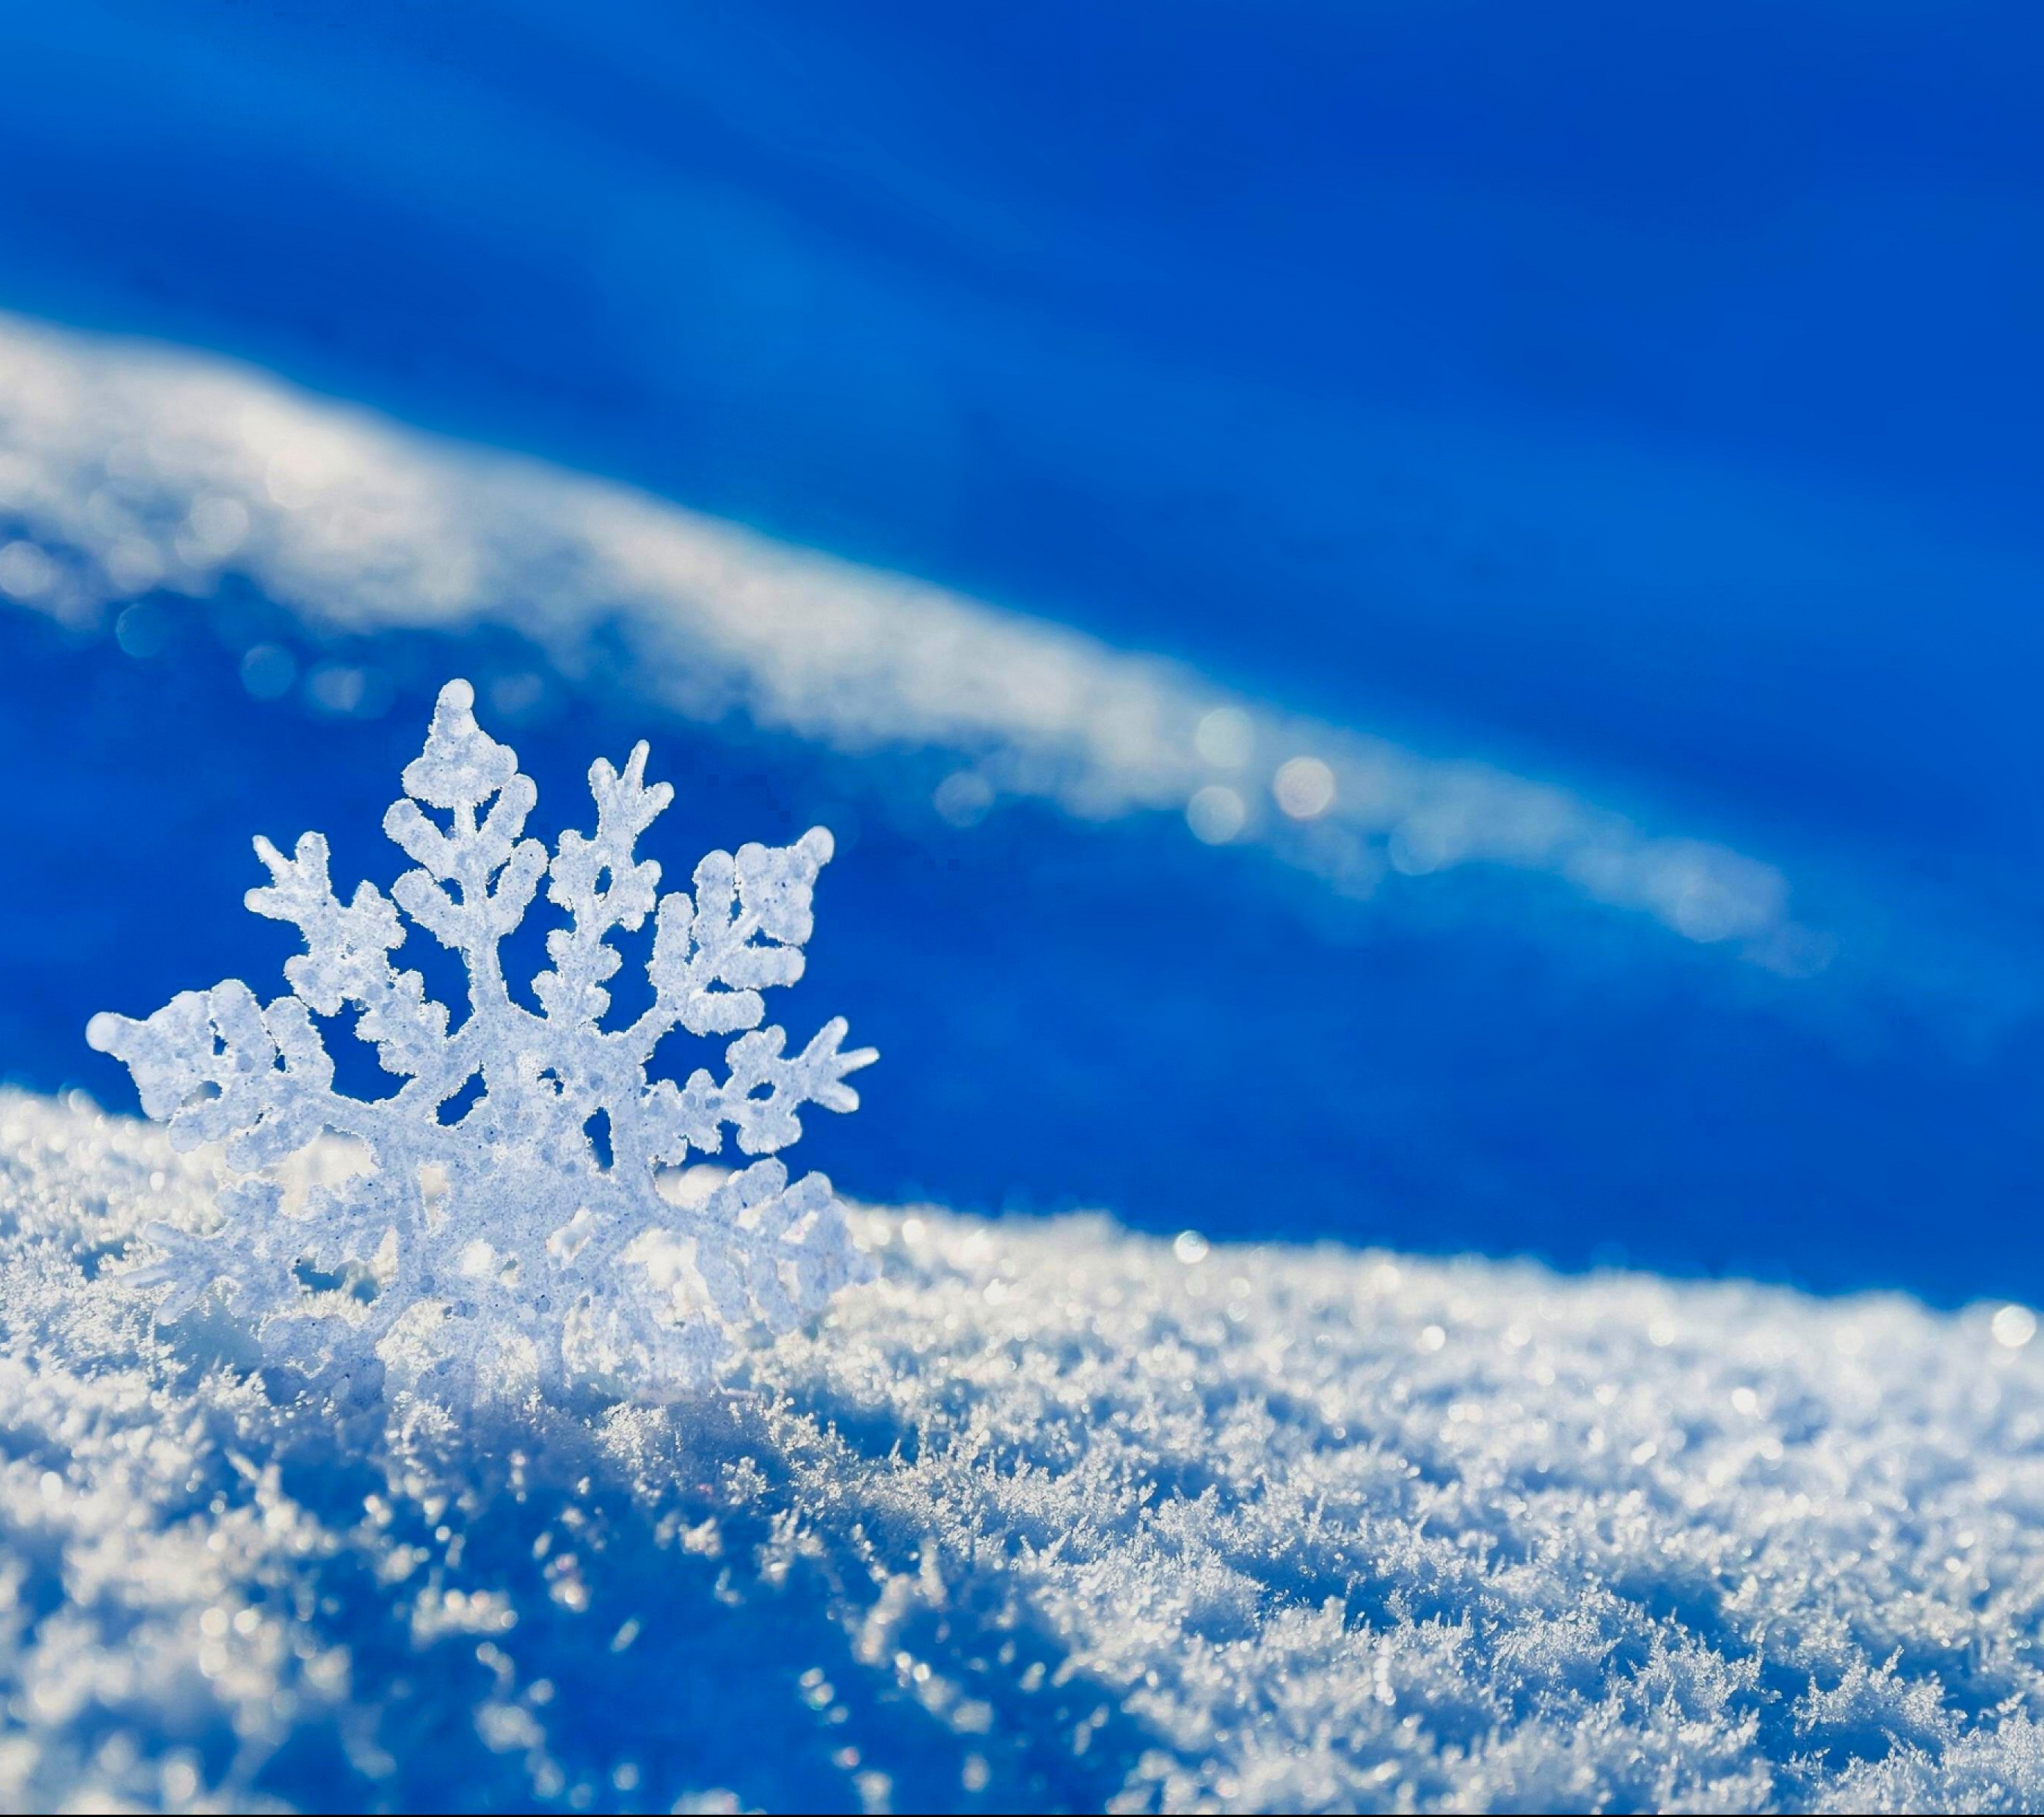 Скачать обои бесплатно Зима, Природа, Снег, Снежинки, Белый, Снежинка, Земля/природа картинка на рабочий стол ПК